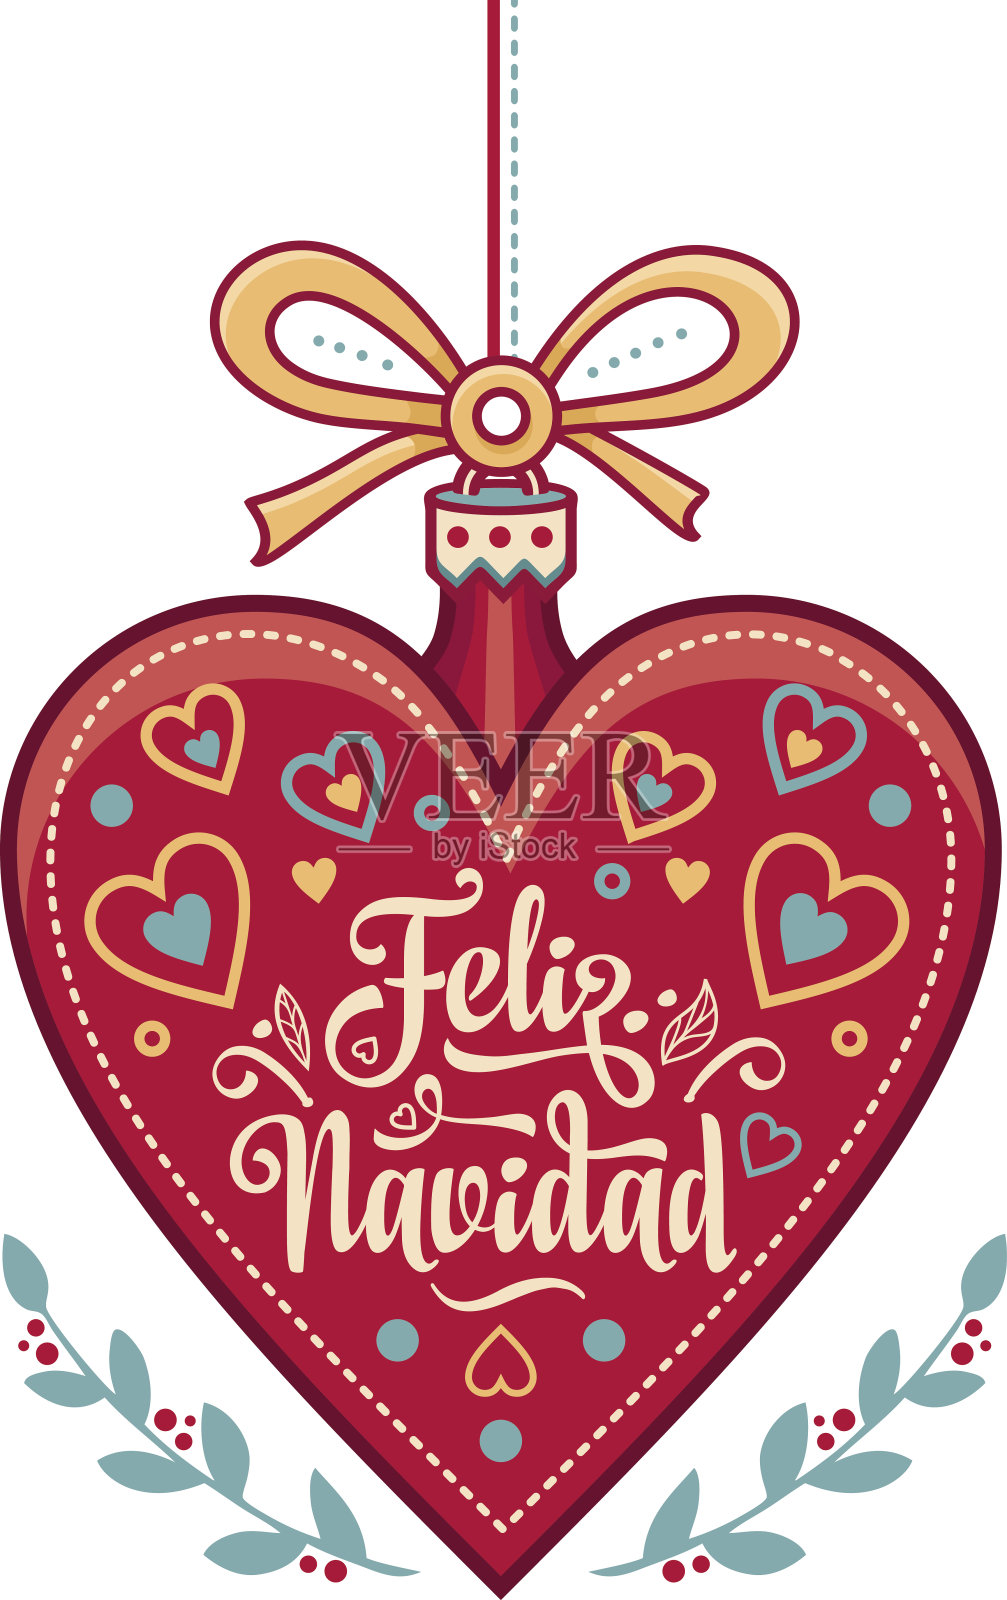 圣诞快乐。西班牙语圣诞贺卡。衷心祝福节日快乐插画图片素材